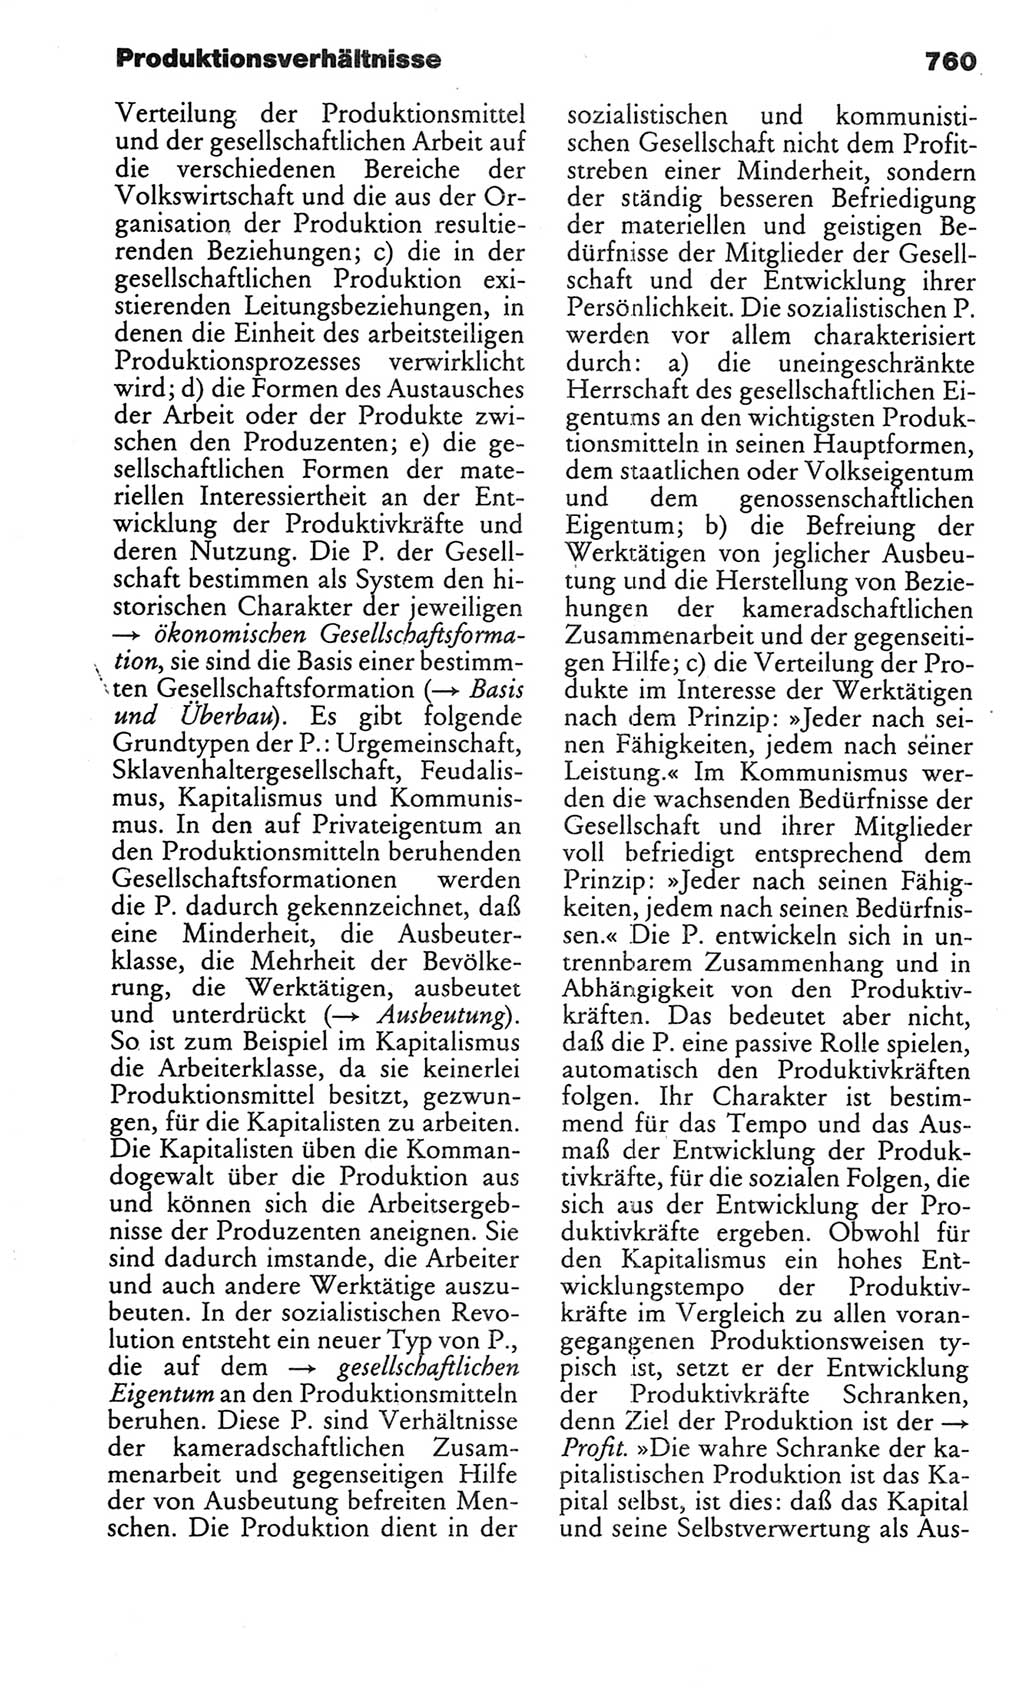 Kleines politisches Wörterbuch [Deutsche Demokratische Republik (DDR)] 1986, Seite 760 (Kl. pol. Wb. DDR 1986, S. 760)